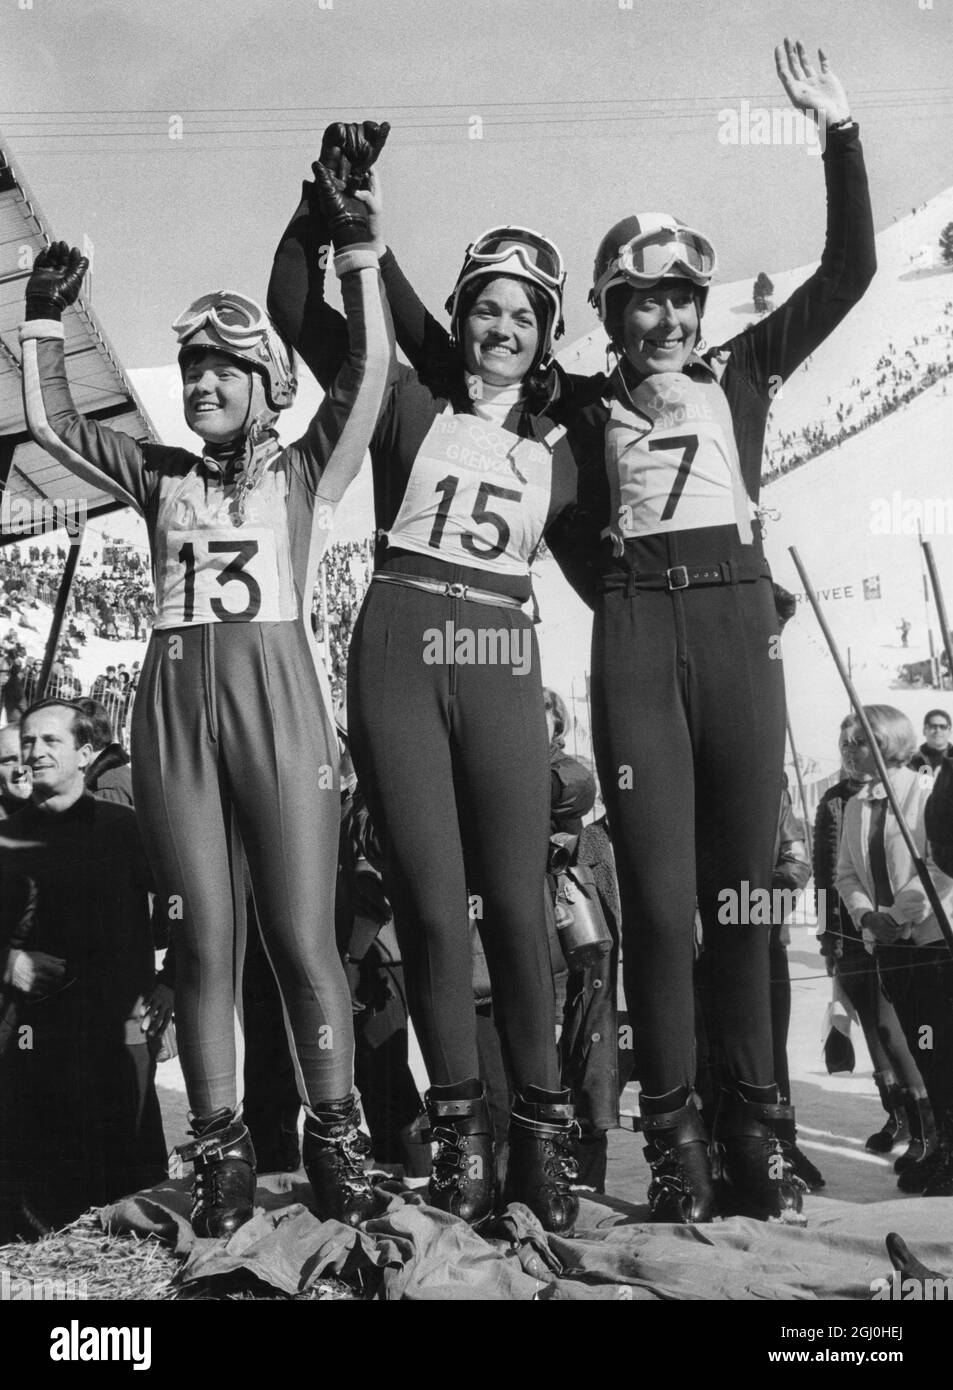 Olympische Winterspiele 1968 - Grenoble, Frankreich die Sieger des Damen-Ski-Downhillrennen, abgebildet nach ihrem Sieg in Chamrousse in Frankreich. Von links nach rechts - Isabelle mir aus Frankreich, Zweiter - Goldmedaillengewinnerin Olga Pall aus Österreich und Christl Haas aus Österreich, der am 11. Februar 1968 Dritter wurde Stockfoto